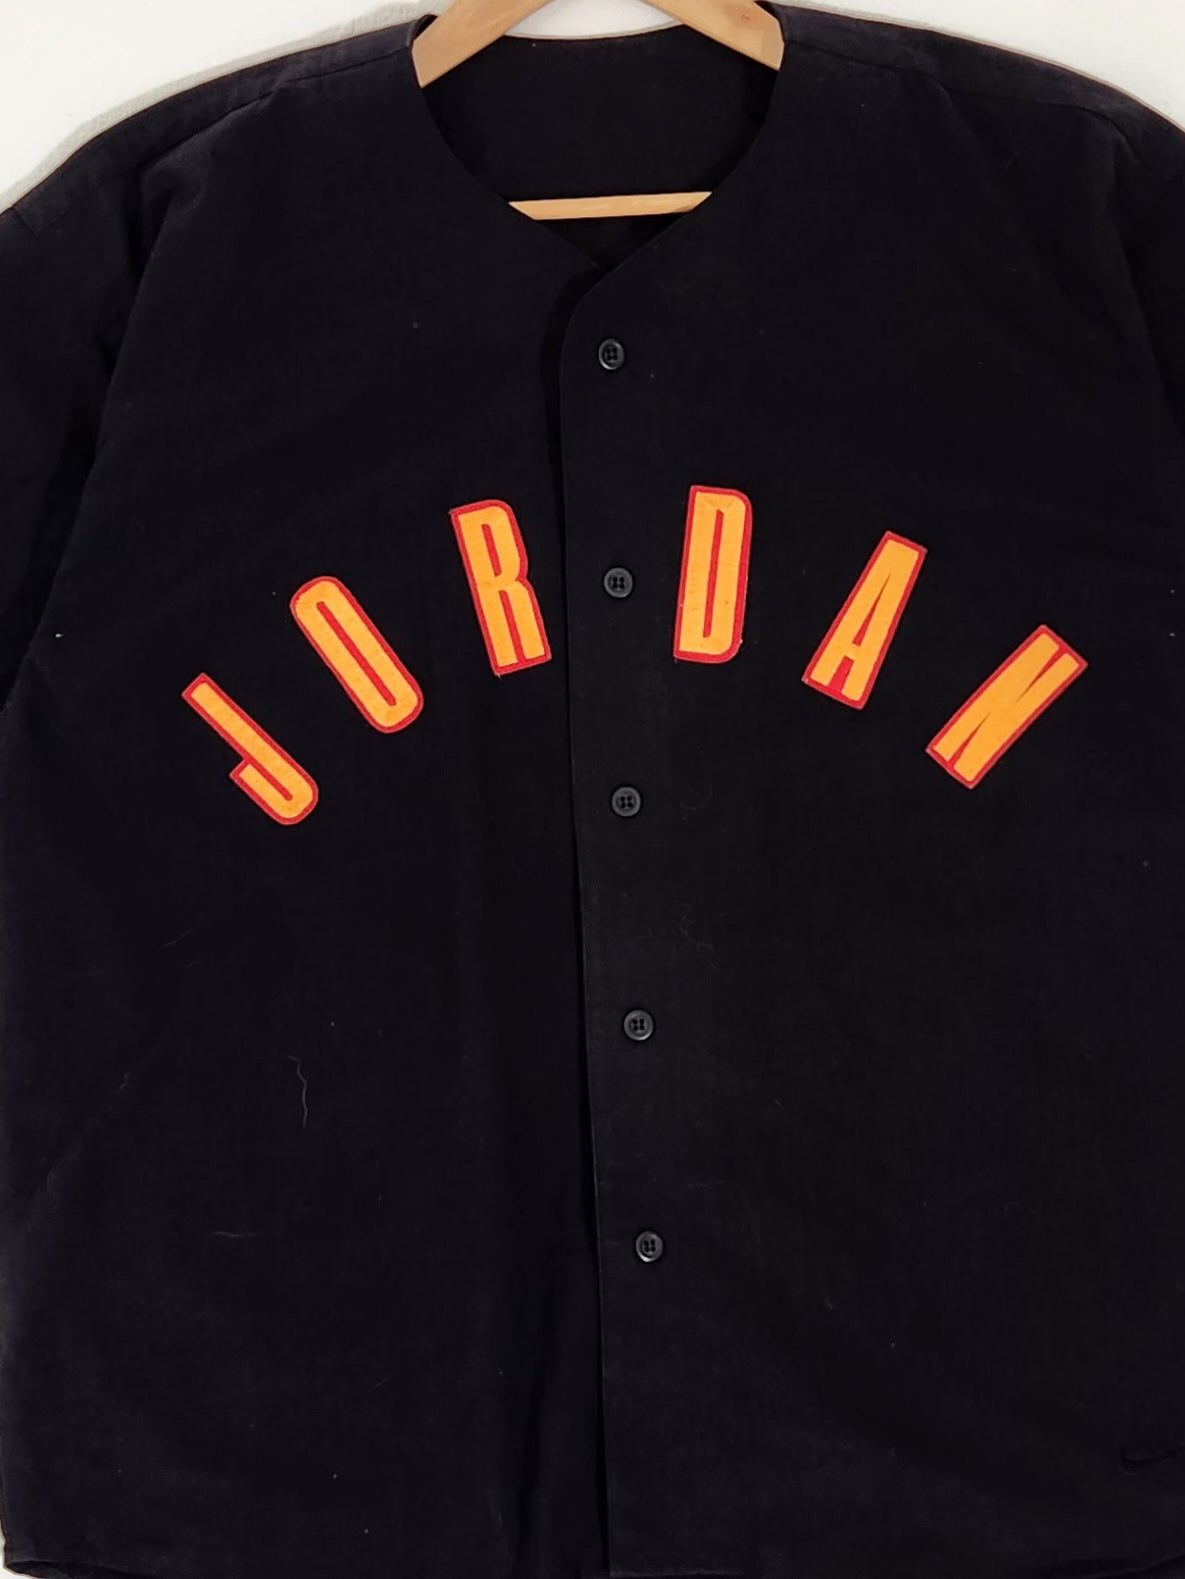 michael jordan baseball jersey